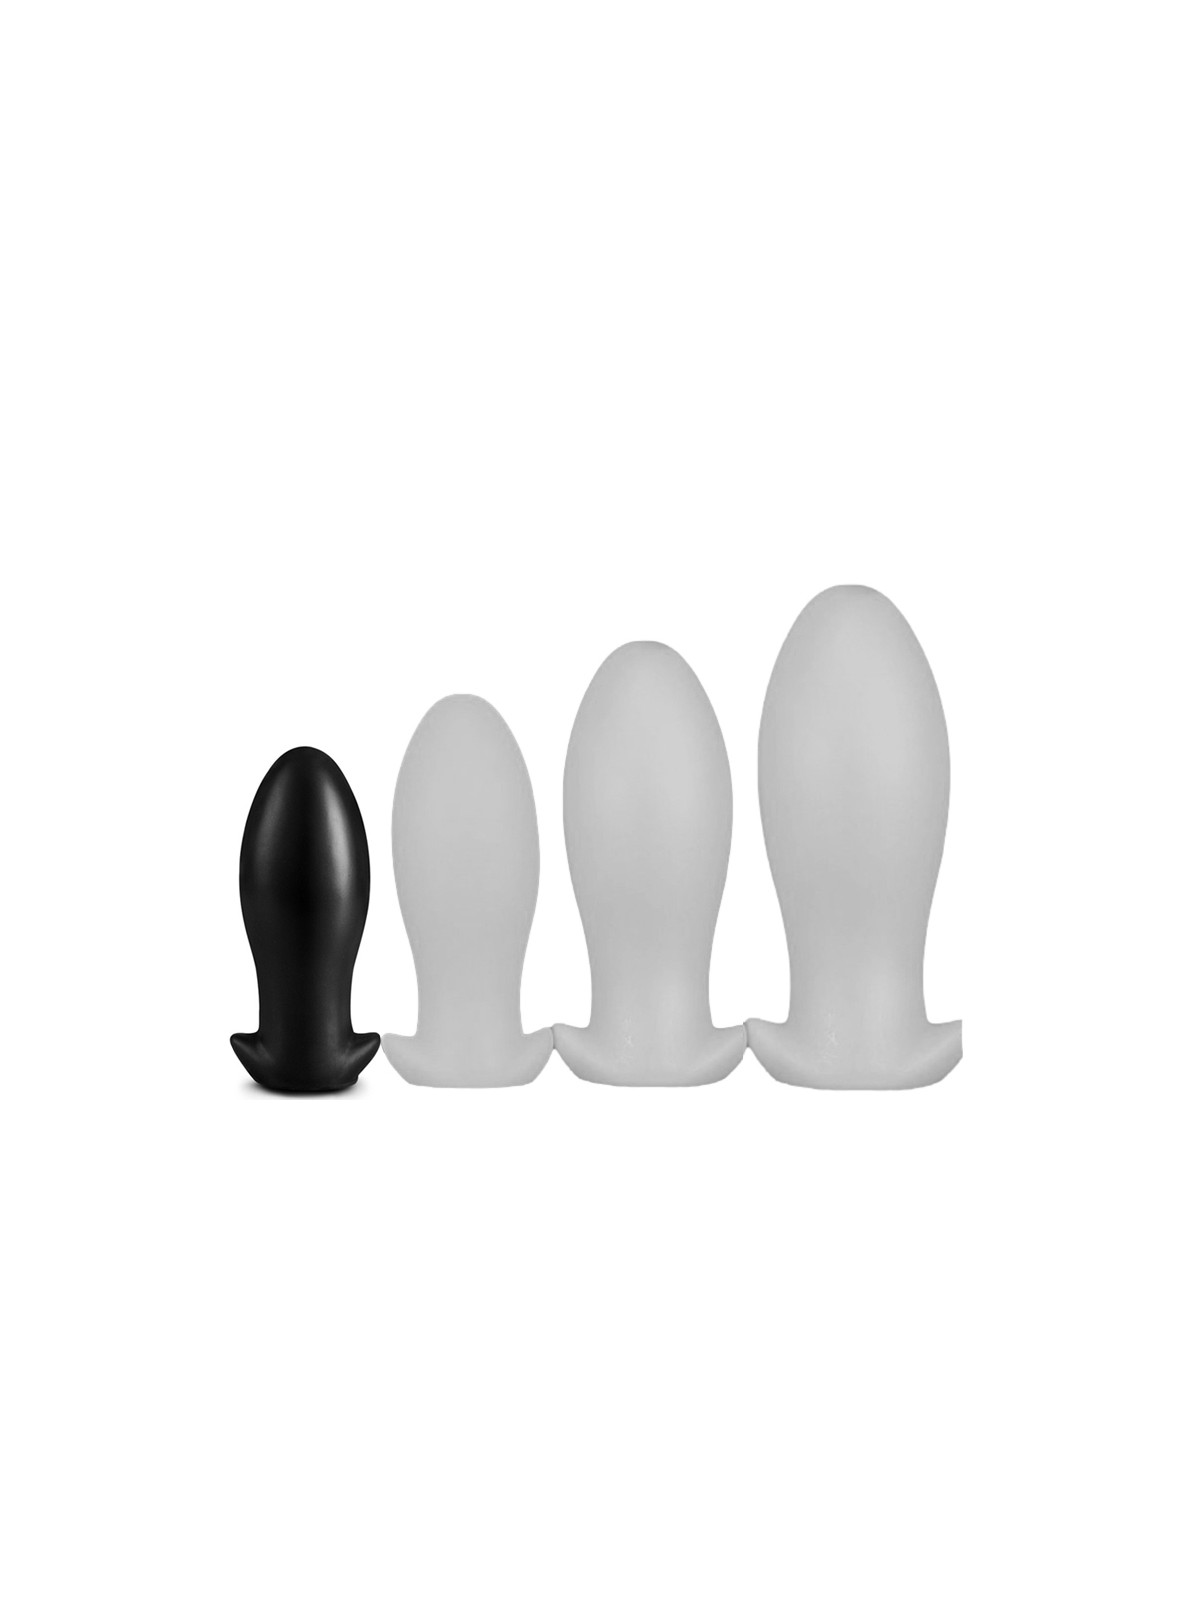 imports Plug Drakar Egg S 10 x 4.5cm Noir Conseils d'utilisation : Nettoyer avant et après usage Utiliser de préférence un lubri